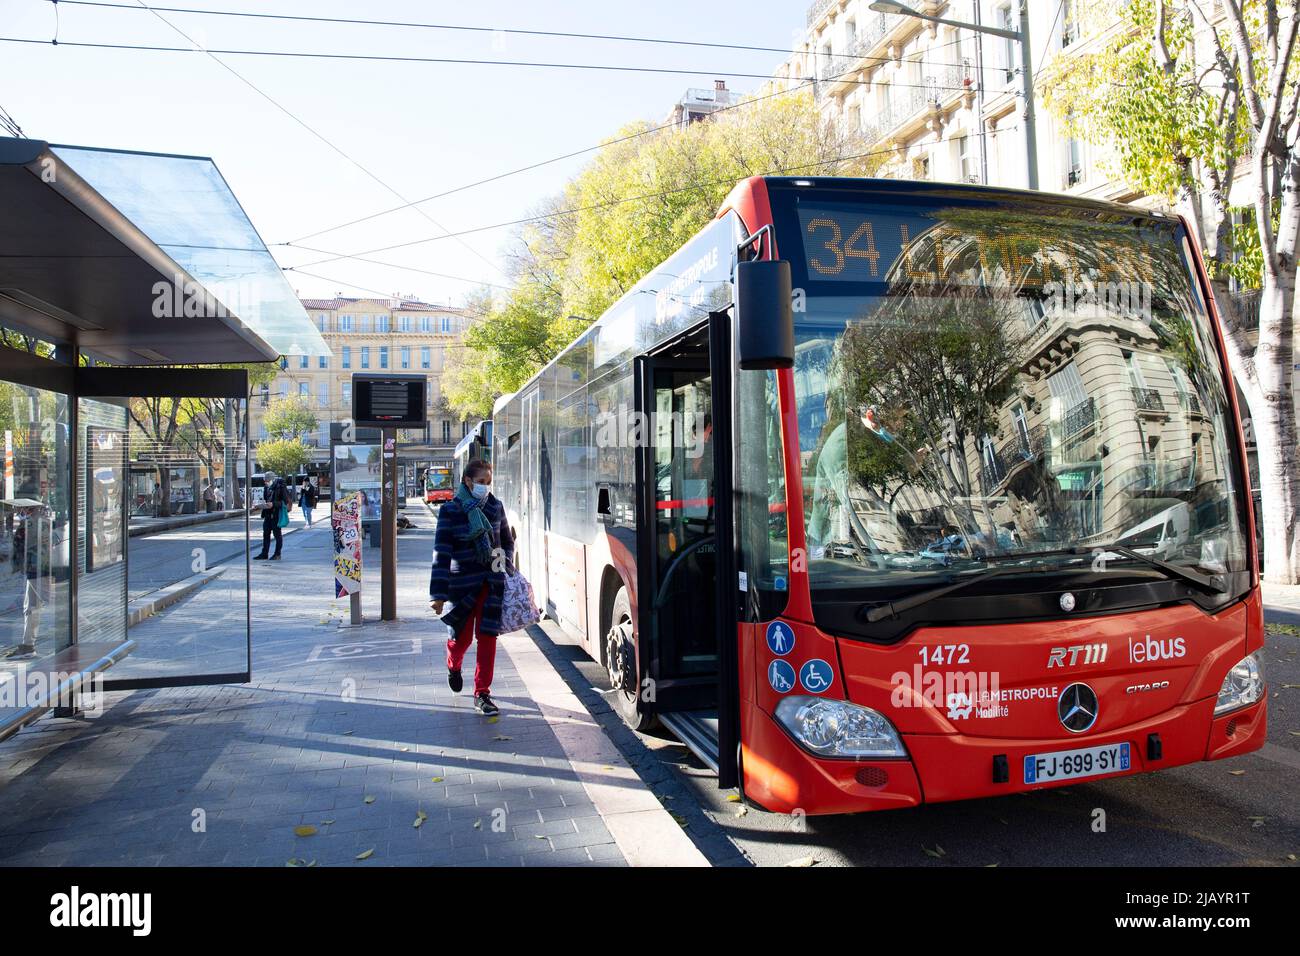 Autobuses en el centro de Marsella, Francia el 6 de diciembre de 2021. Fotografía de Bénédicte Desrus Foto de stock